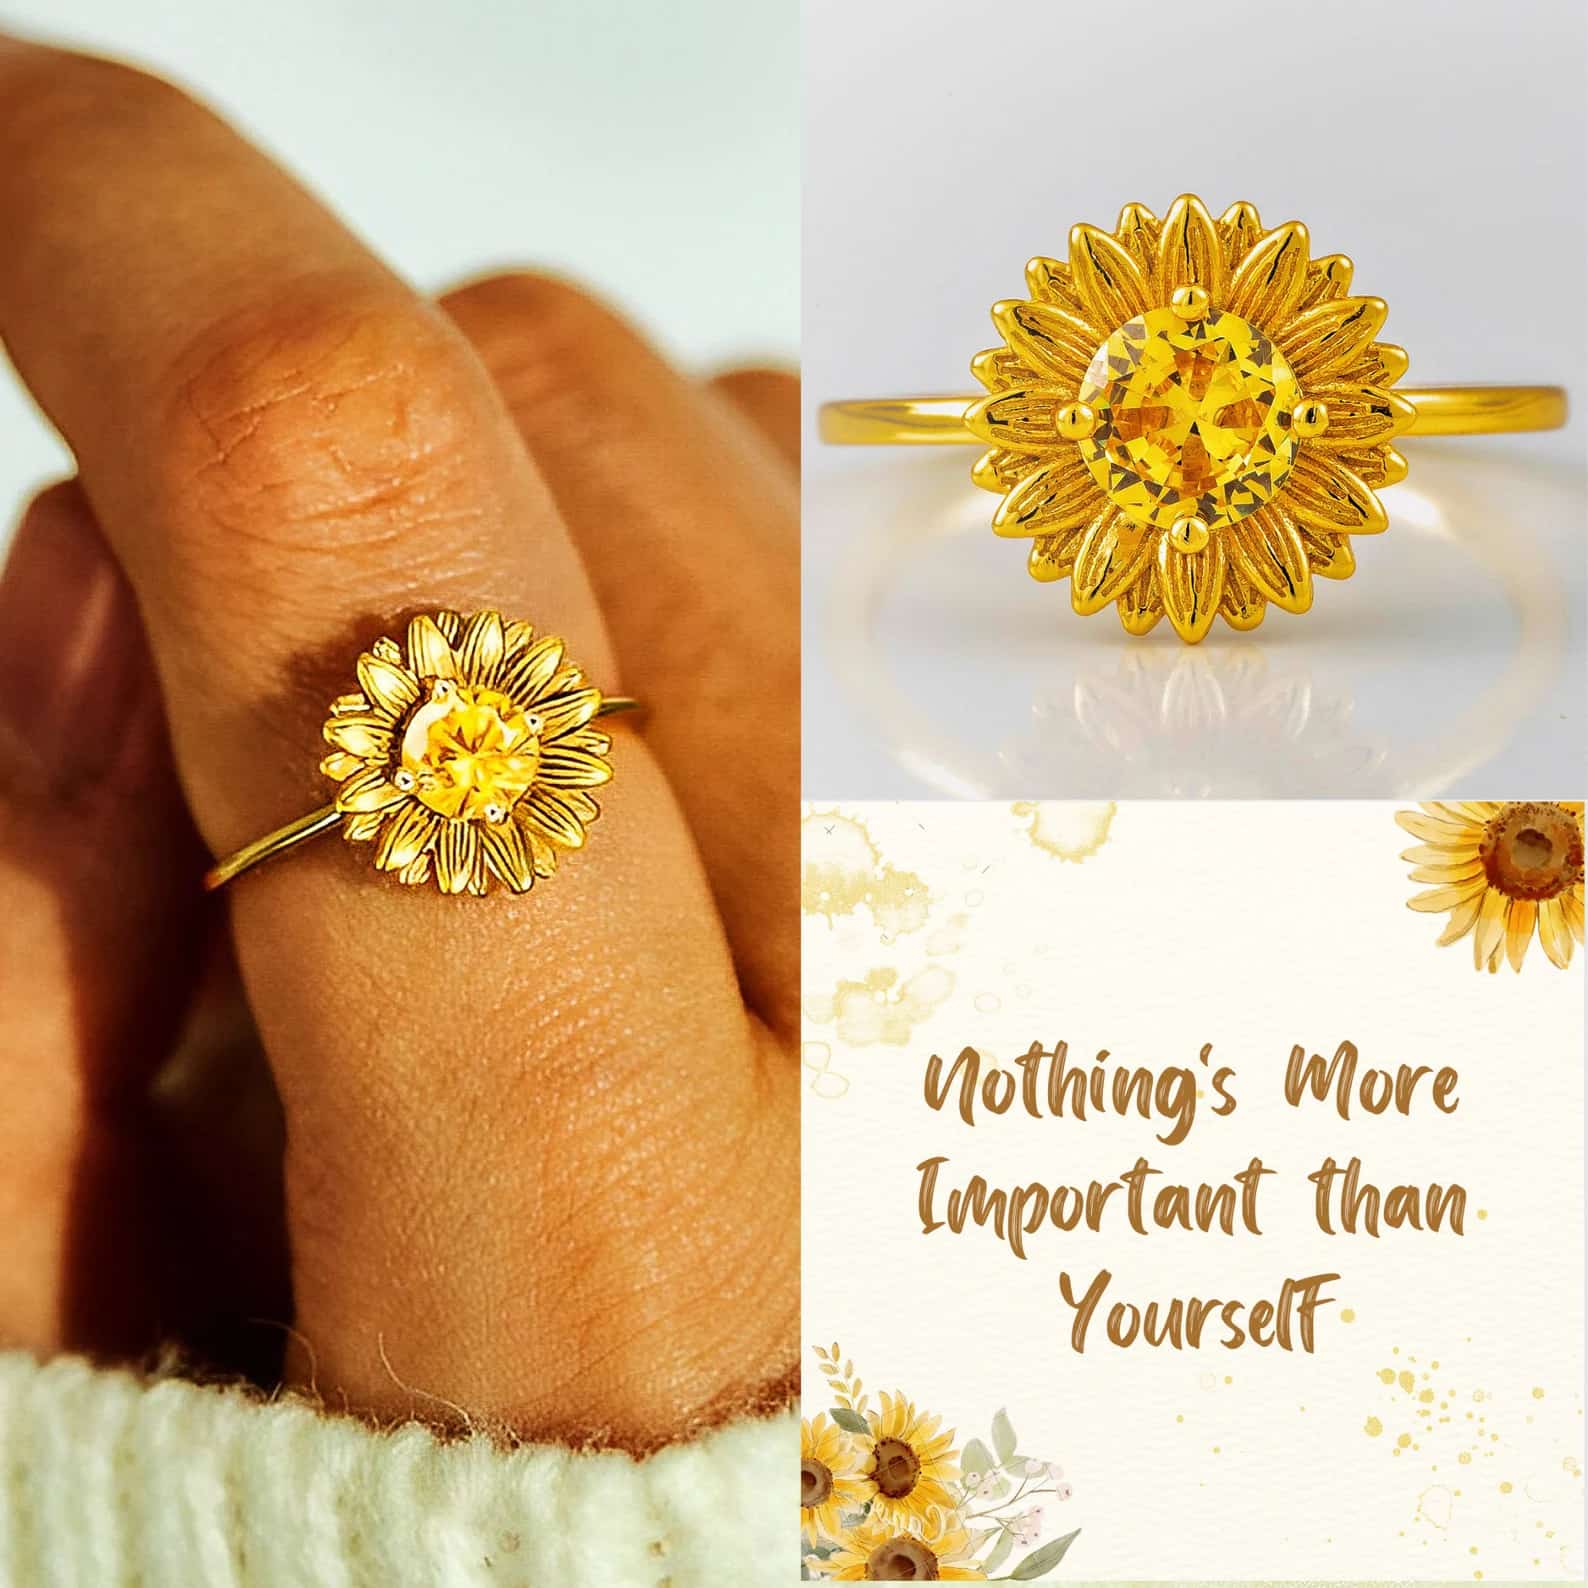 Sunflower Ring